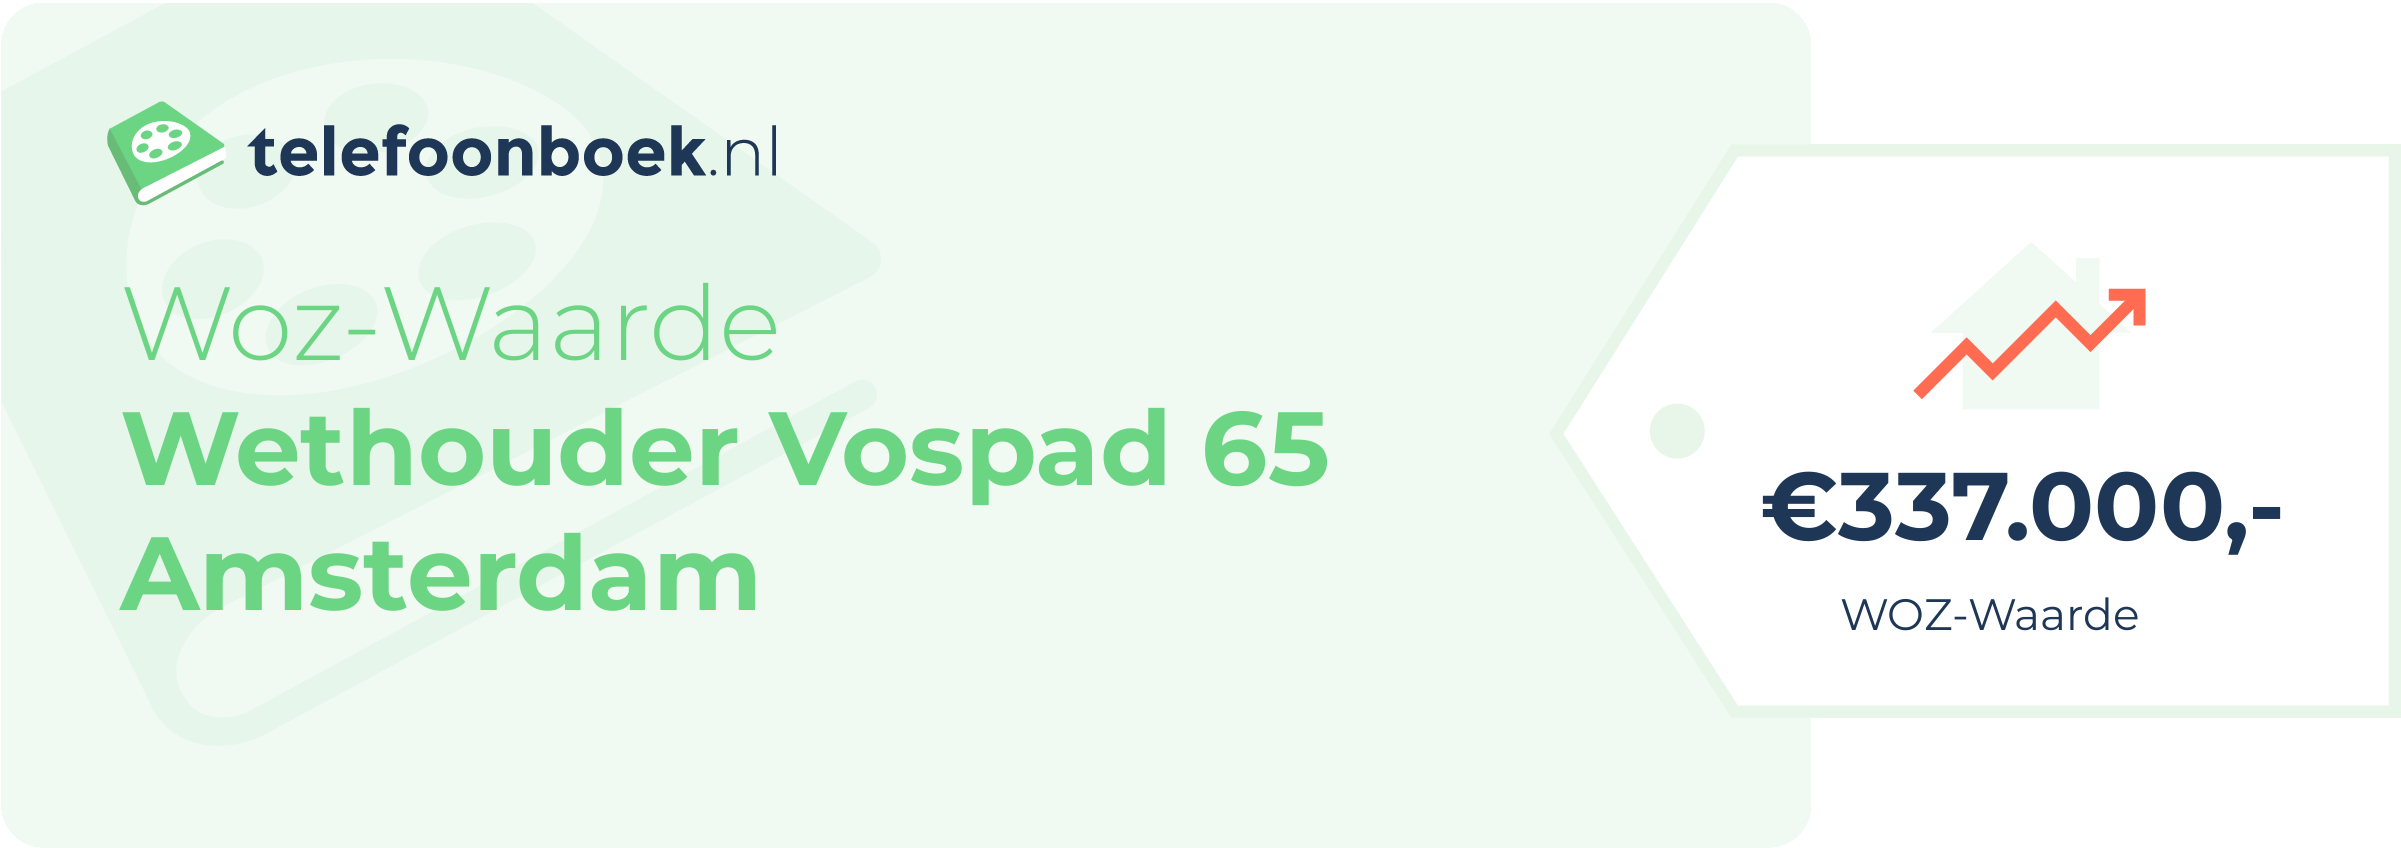 WOZ-waarde Wethouder Vospad 65 Amsterdam